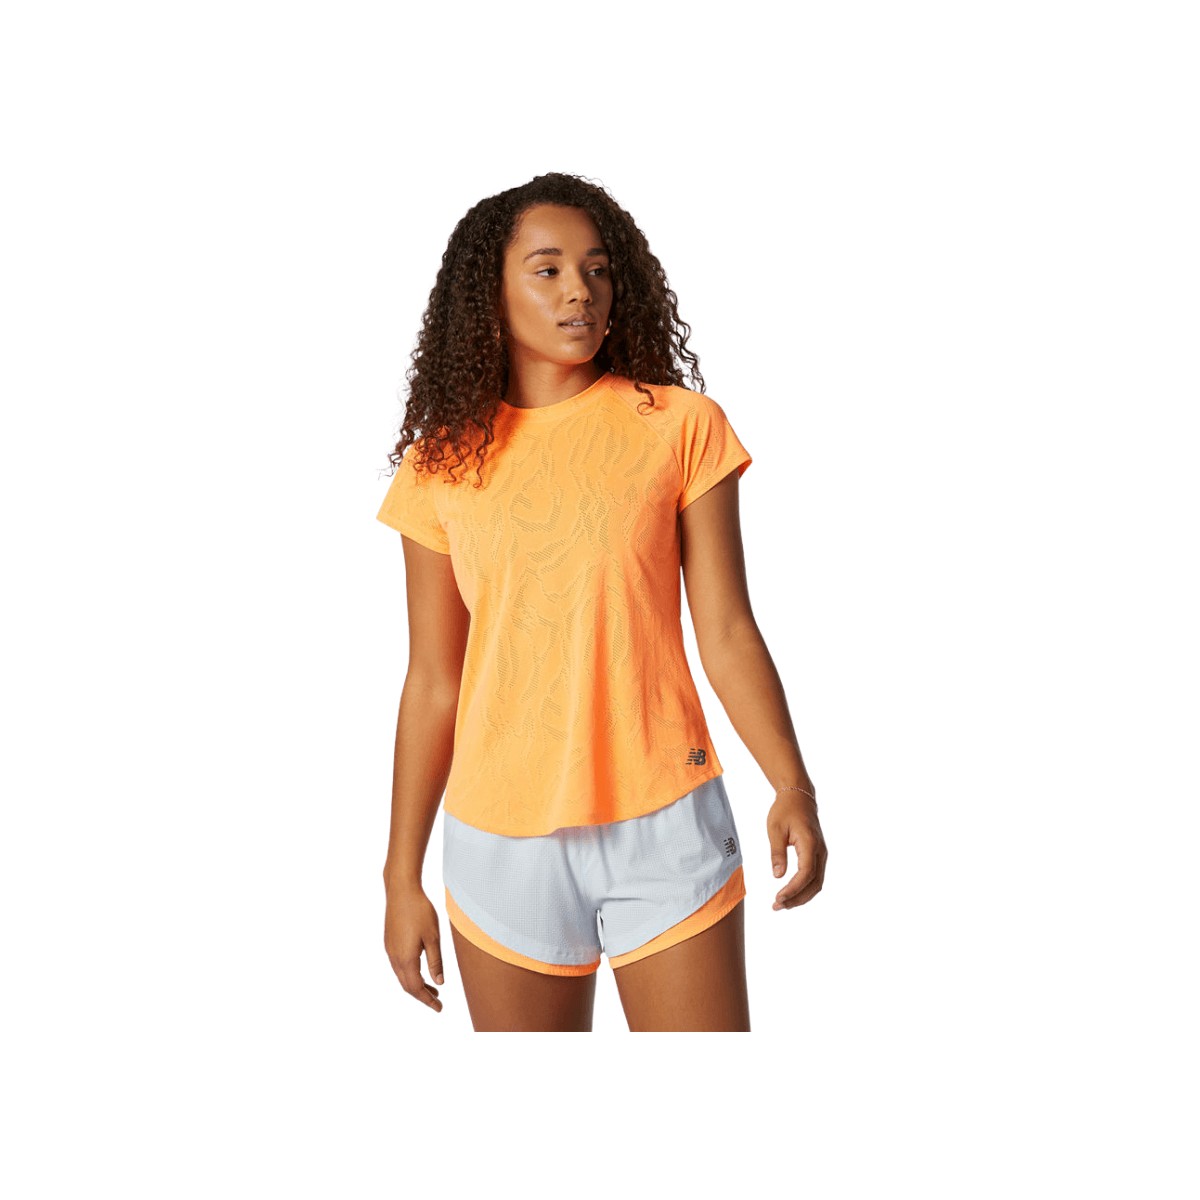 New Balance Q Speed Fuel Jacquard T-shirt Femme Orange à Manches Courtes, Taille S